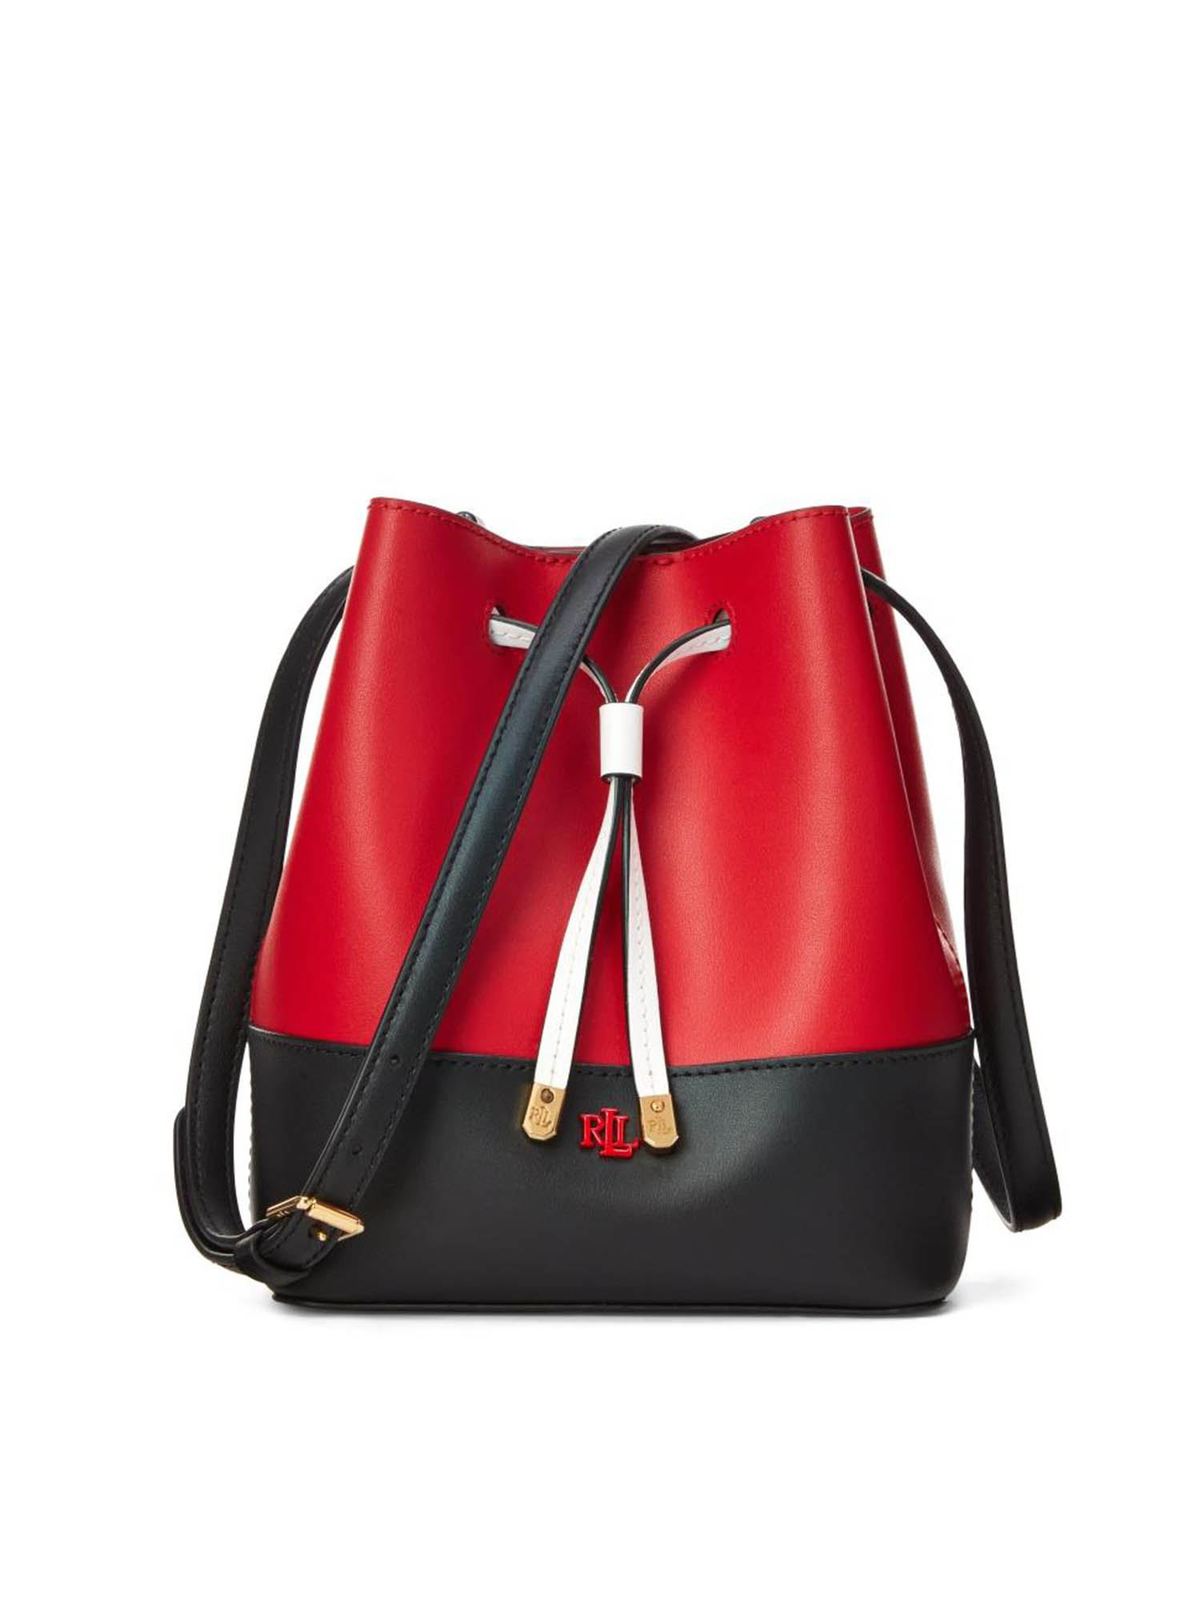 Bucket bags Lauren Ralph Lauren - Logo shoulder bag in black and red -  431818578002